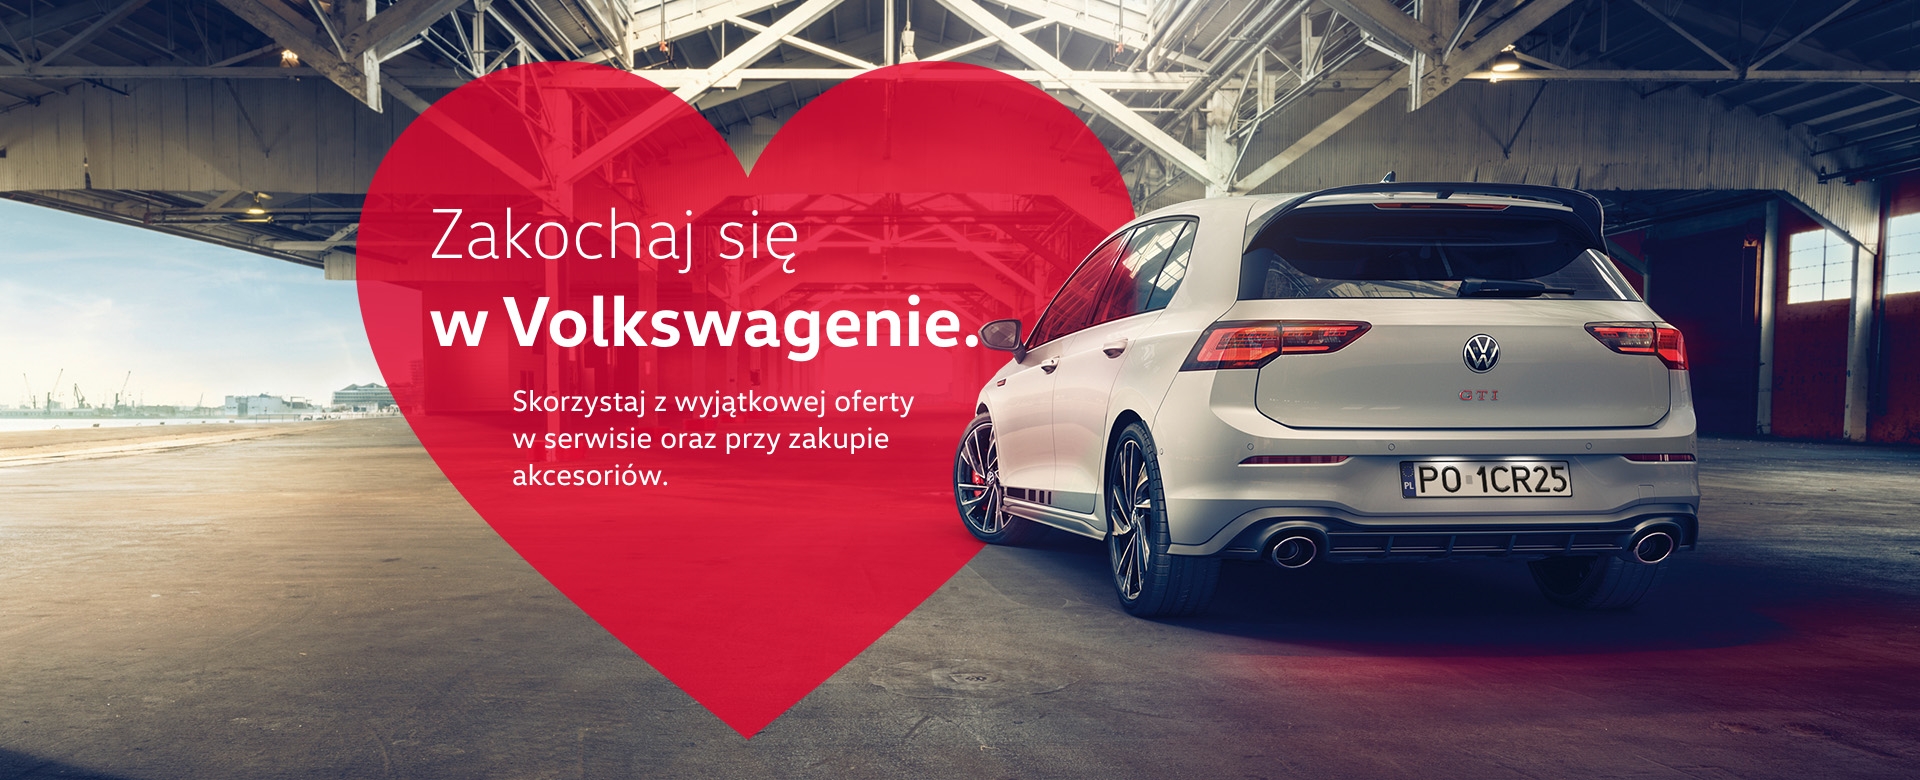 Zakochaj się w Volkswagenie.